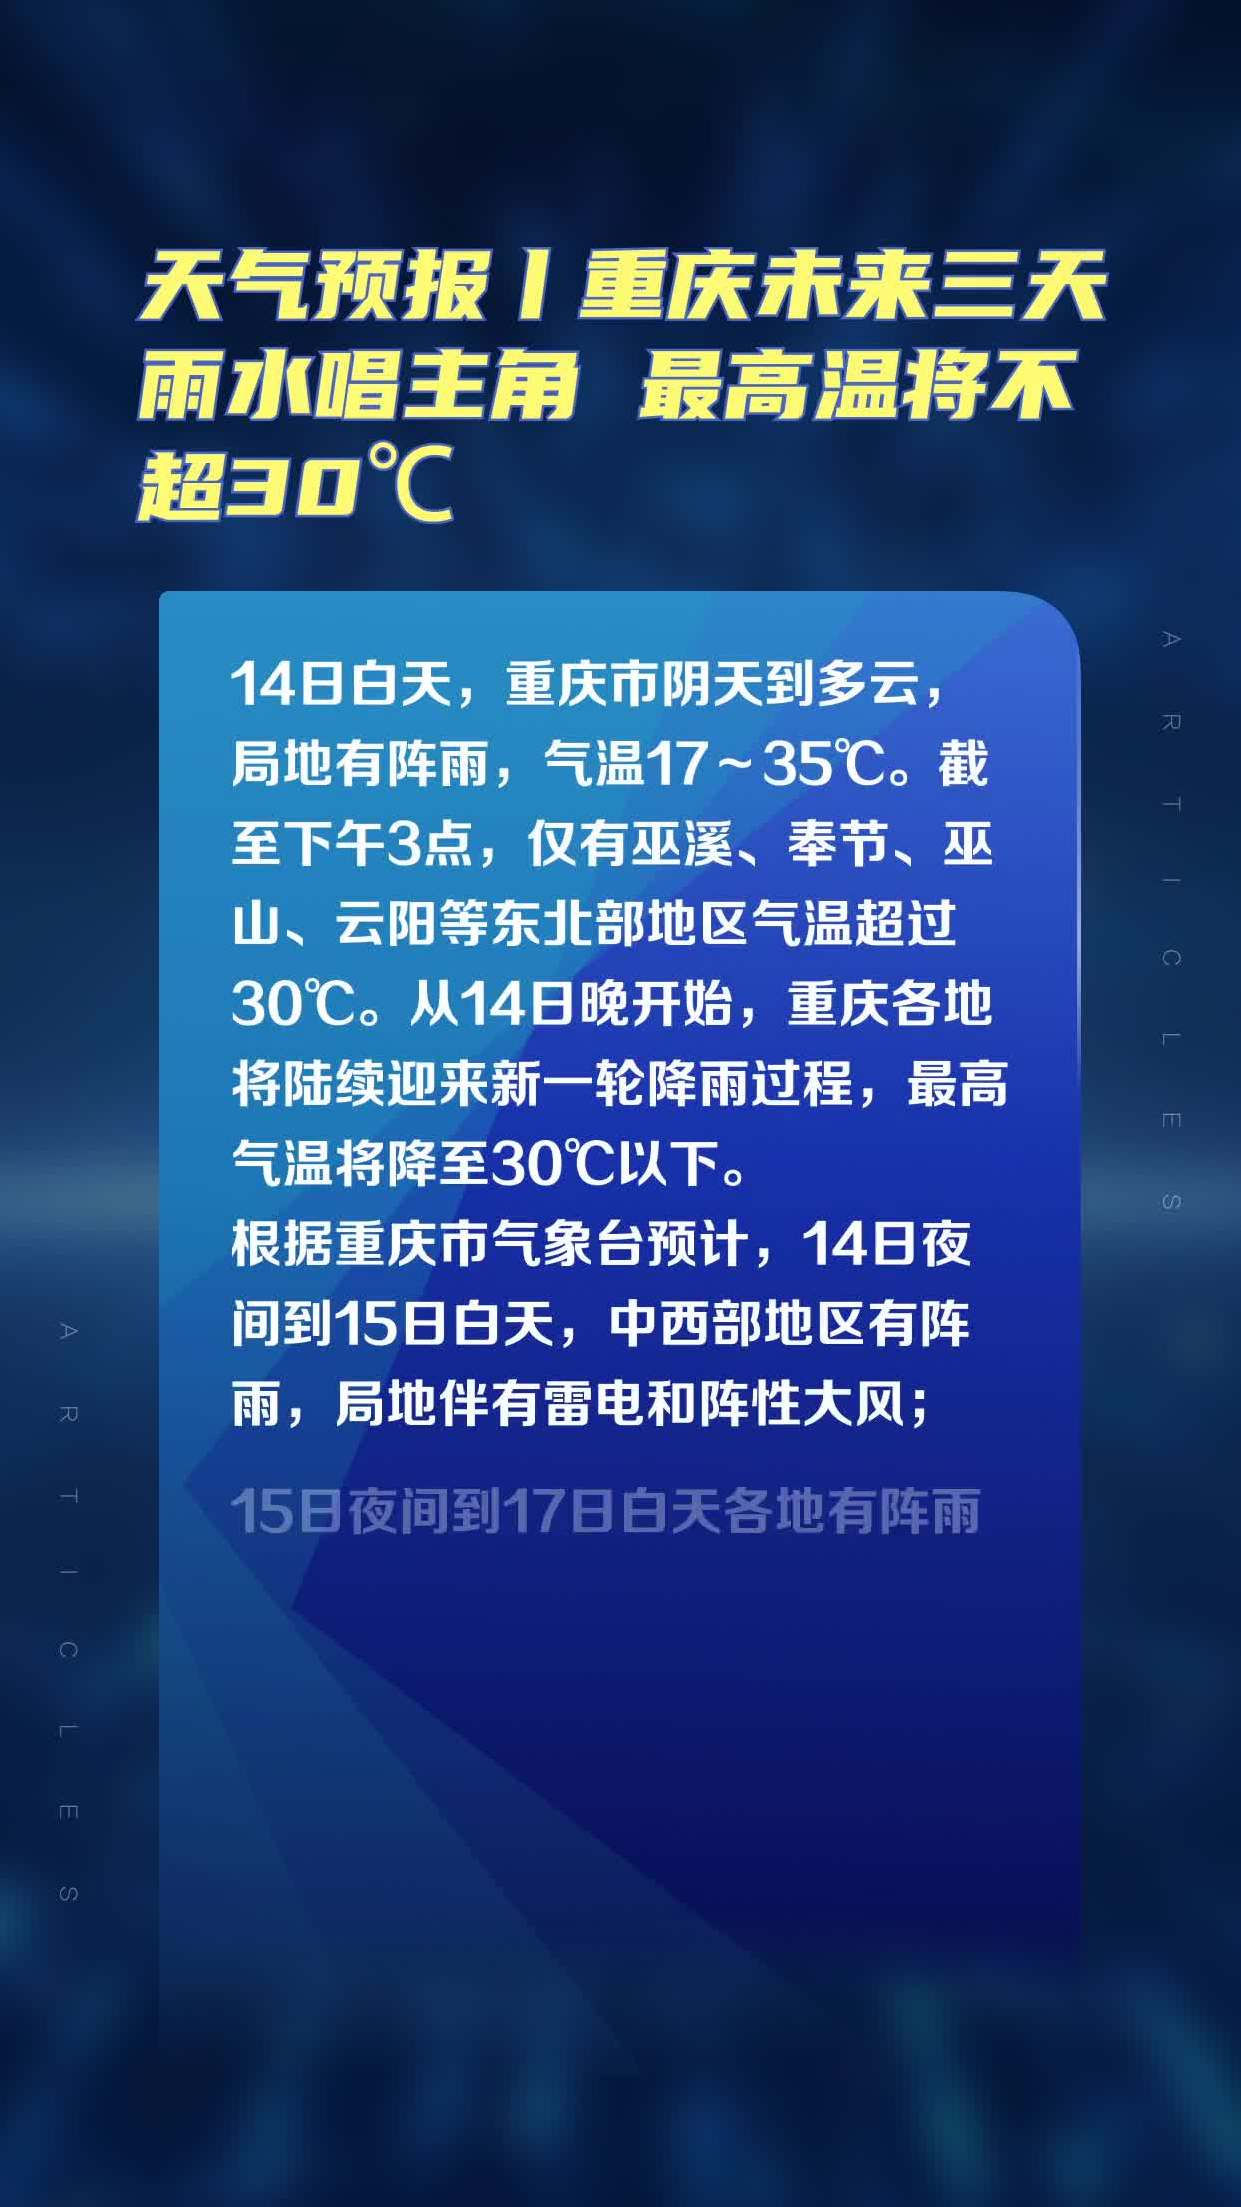 天气预报丨重庆未来三天雨水唱主角最高温将不超30